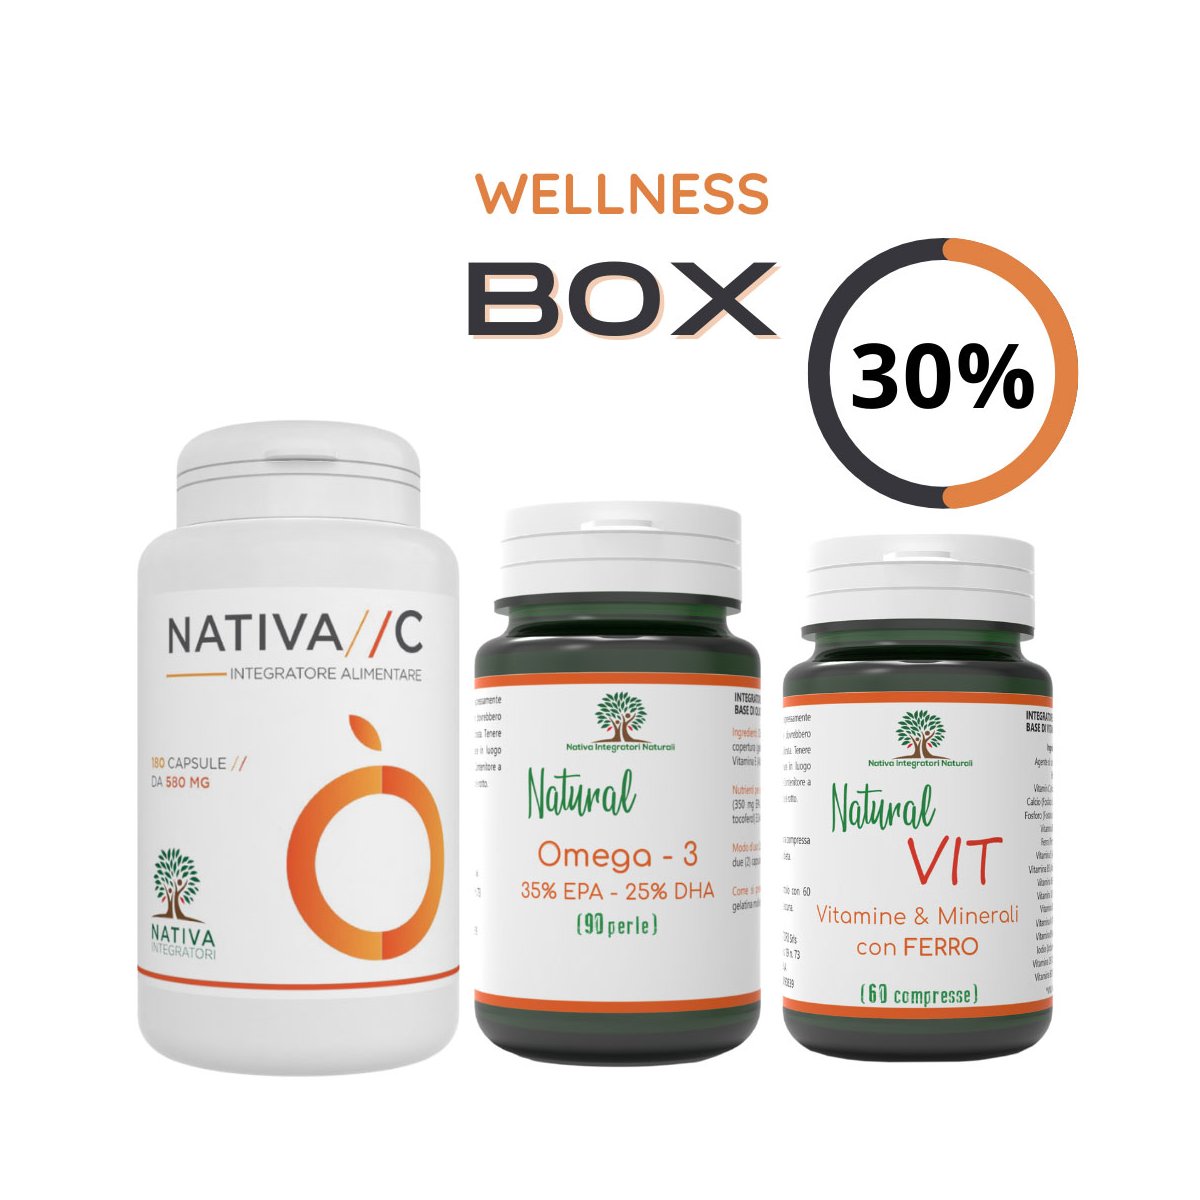 Wellness Box: Nativa C + Omega 3 + Natural Vit